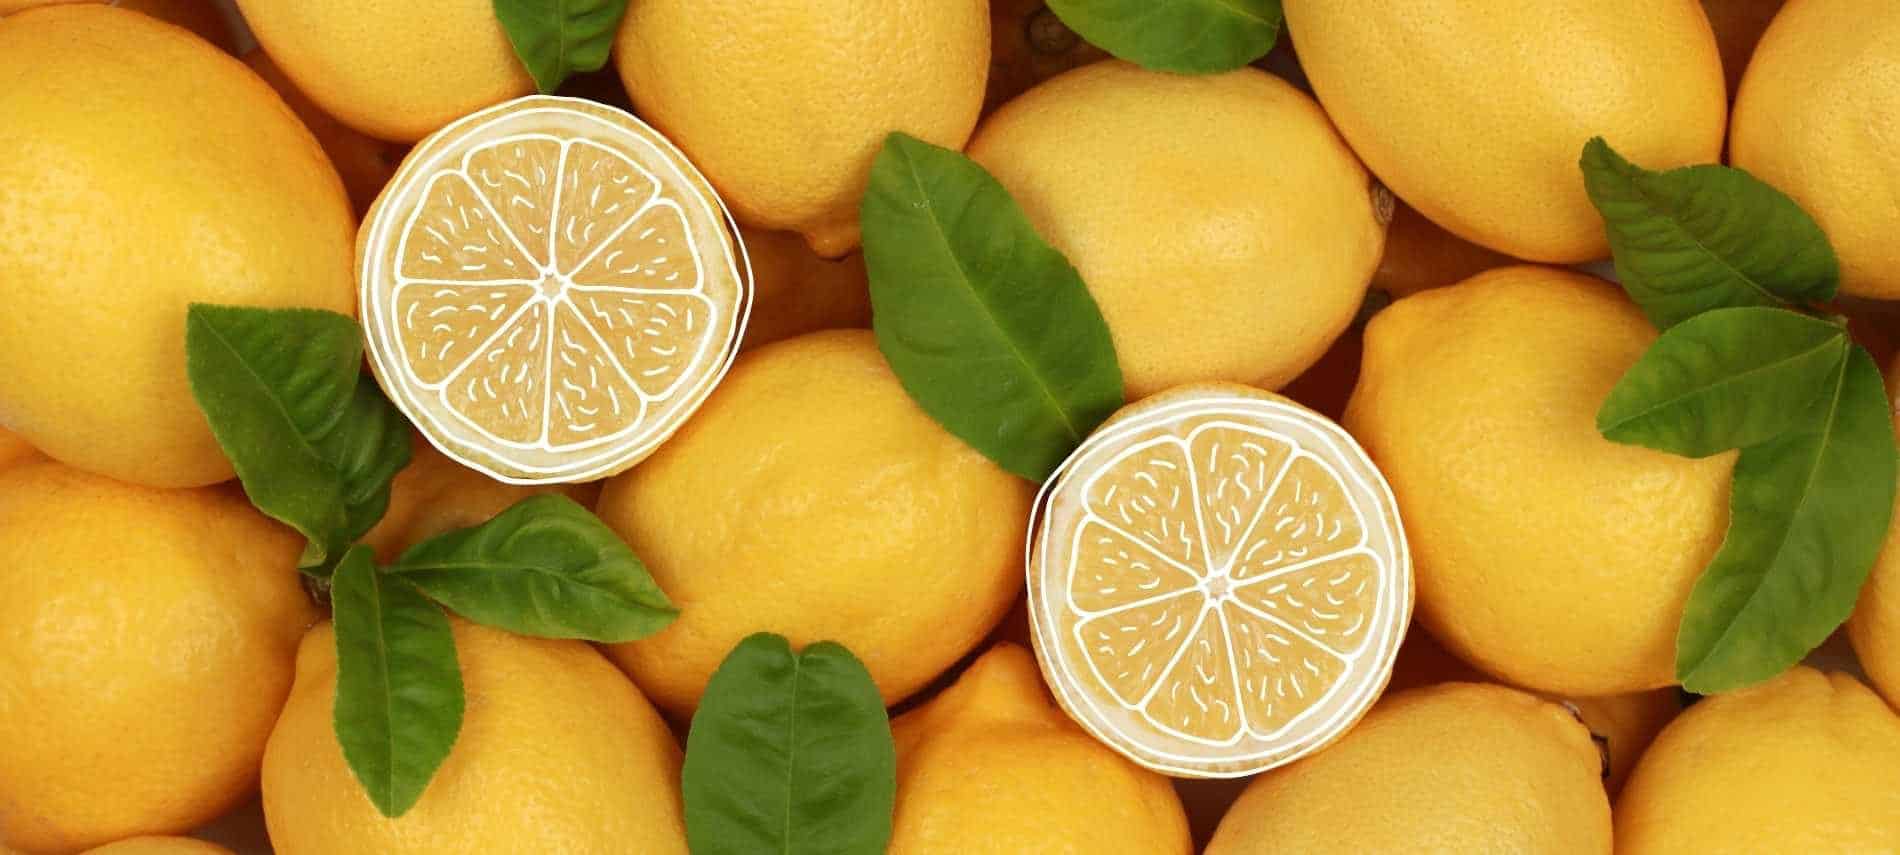 Two slices of lemon atop full lemons and leaves.